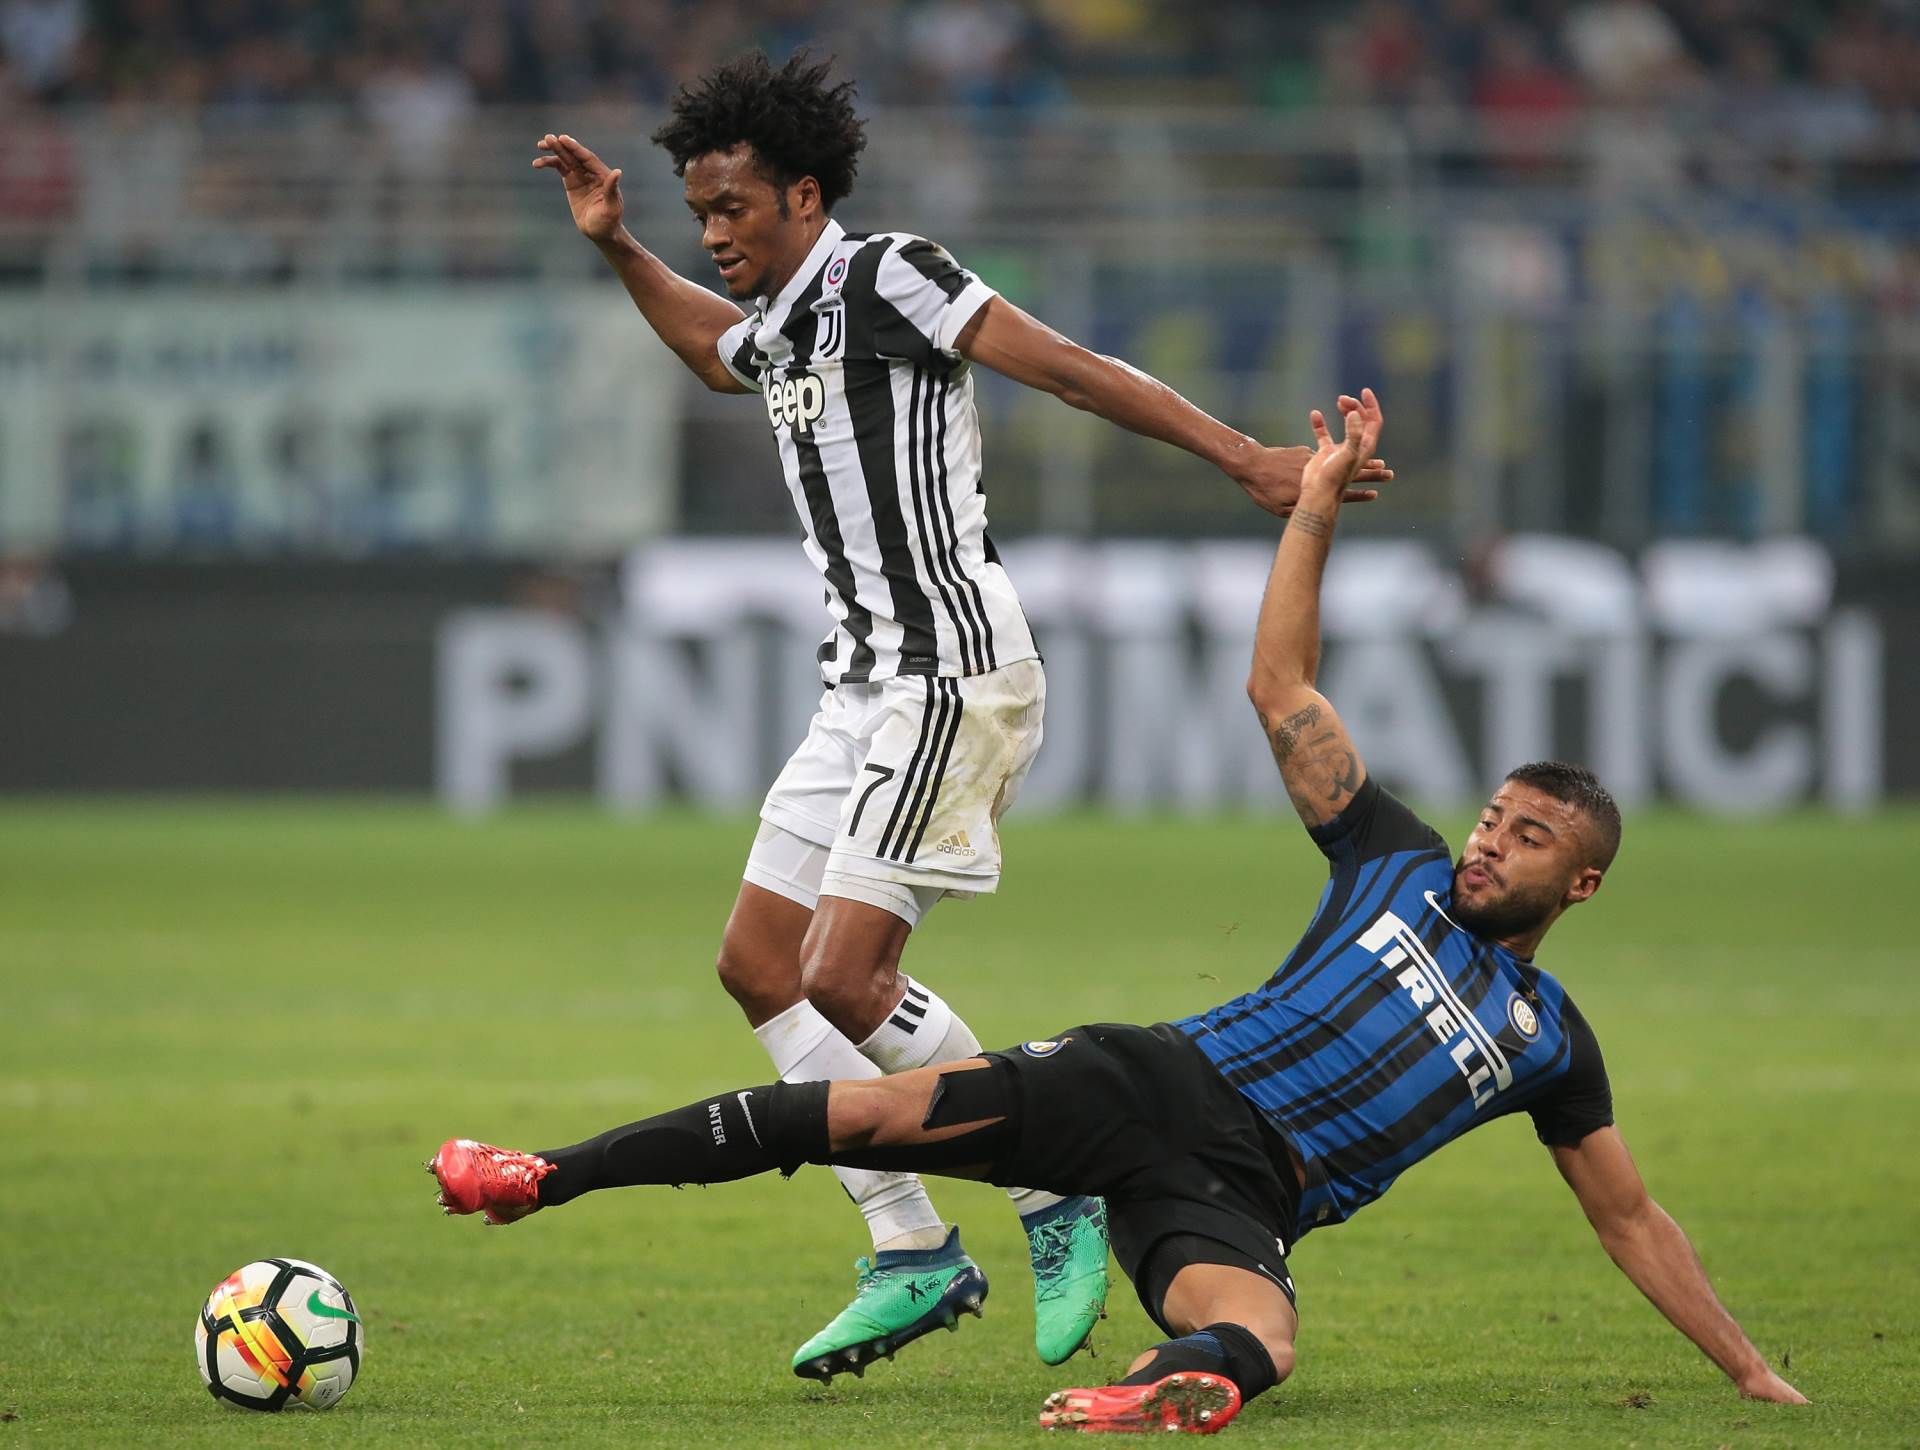  Da-li-se-sprema-novi-Kalcopoli-italijanski-fudbal-sporna-utakmica-Inter-Juventus-2-3-sezona-2017/18 